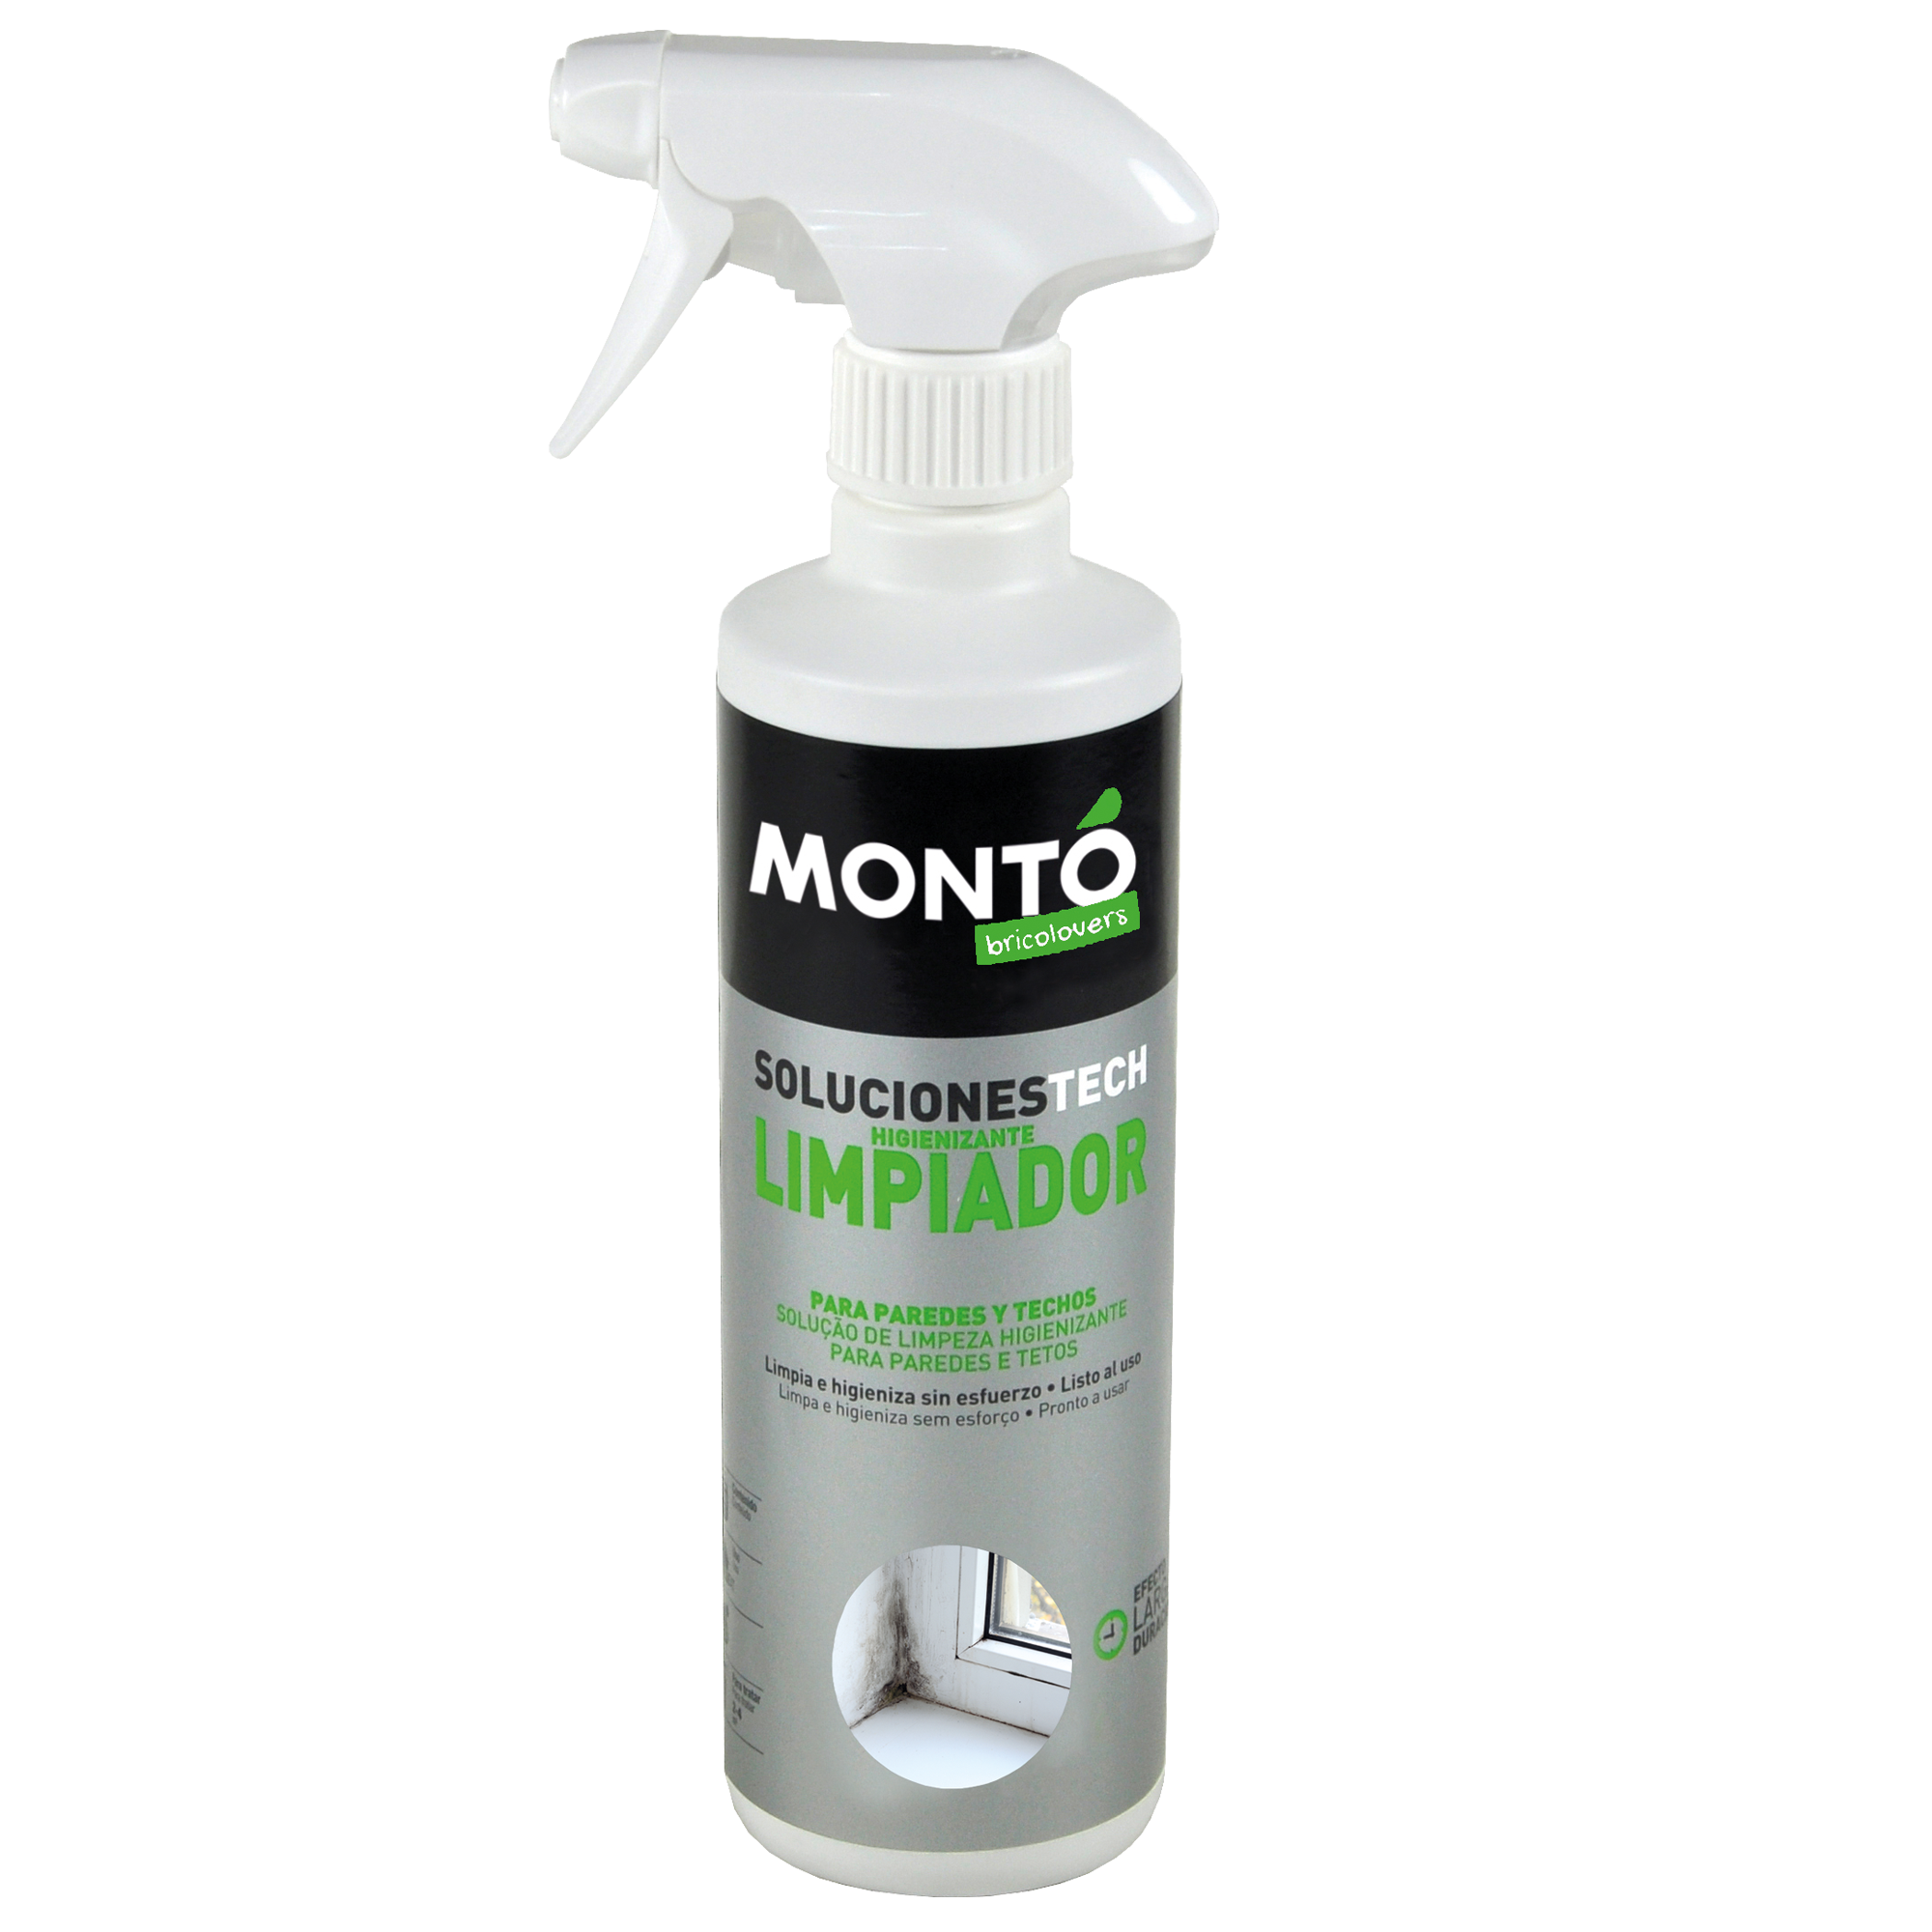 L Spray Antimoho, Limpiador De Moho, Limpieza Antimoho W23 F